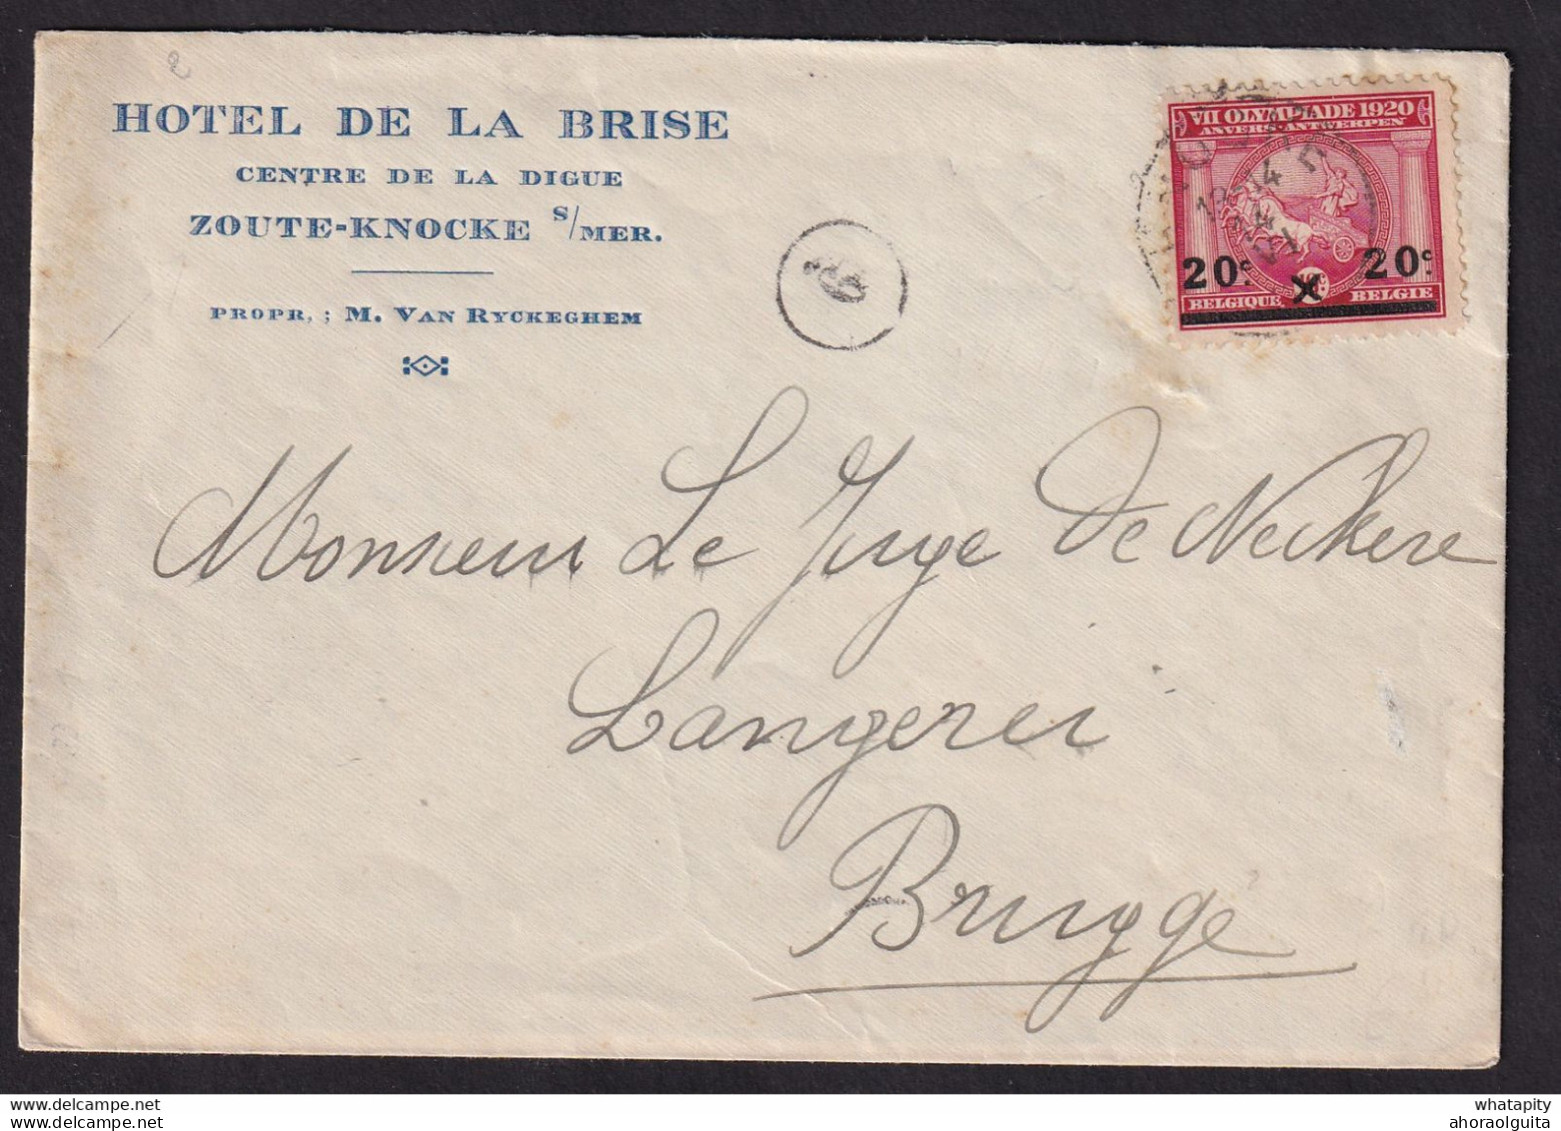 DDBB 577 - Enveloppe Illustrée TP Jeux Olympiques KNOKKE 1921 Vers BRUGGE - Entete Et Gravure Hotel De La Brise, Digue - Estate 1920: Anversa